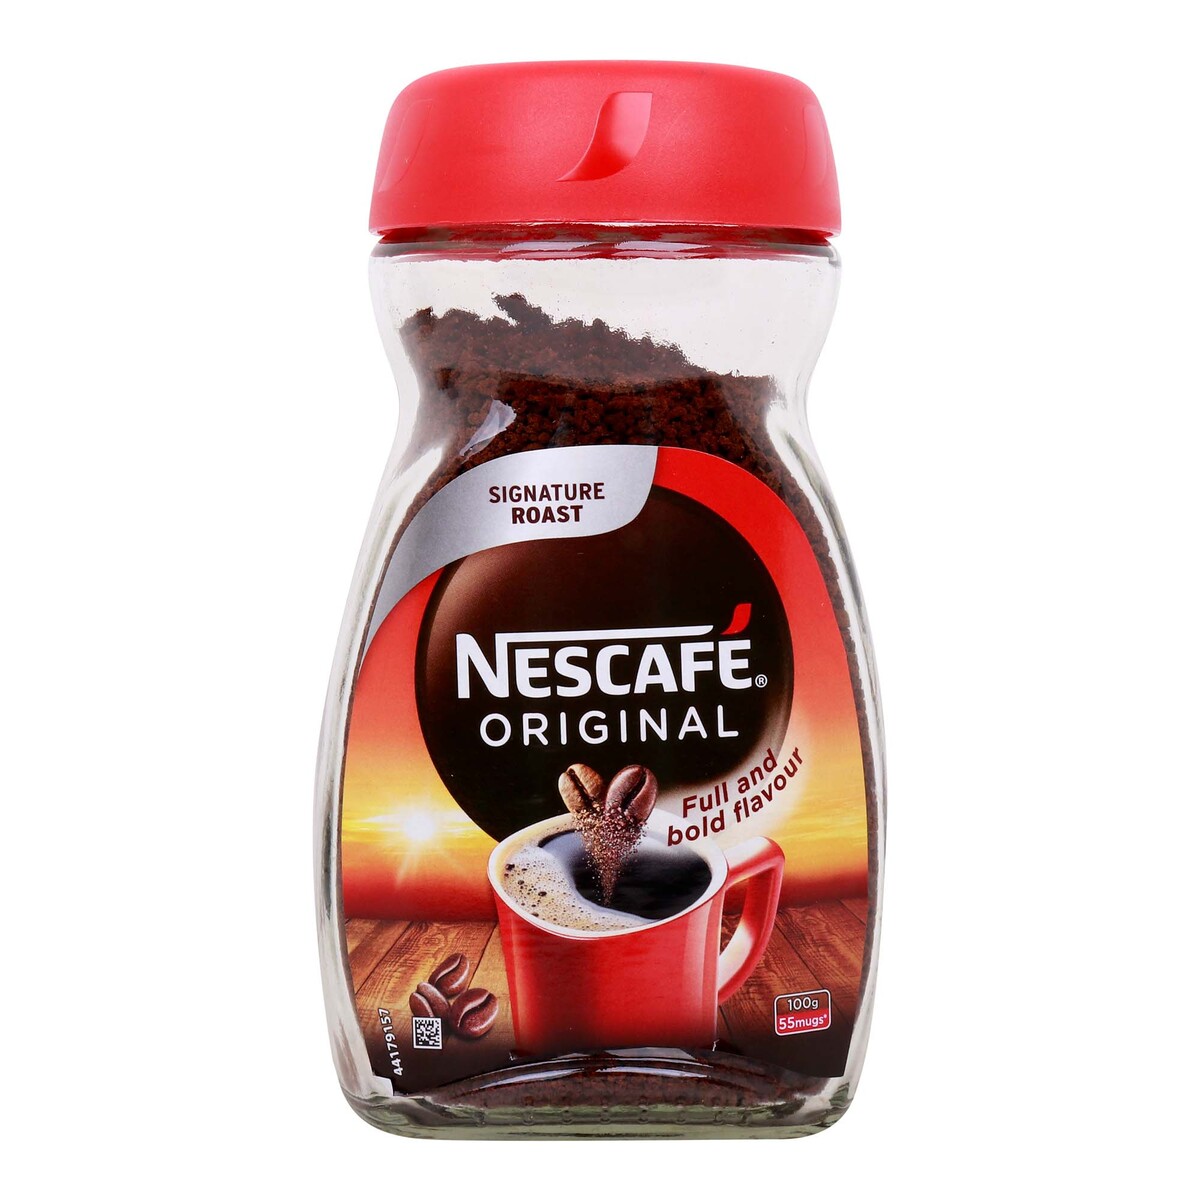 Nescafe Original Signature Roast Coffee Powder 95 g